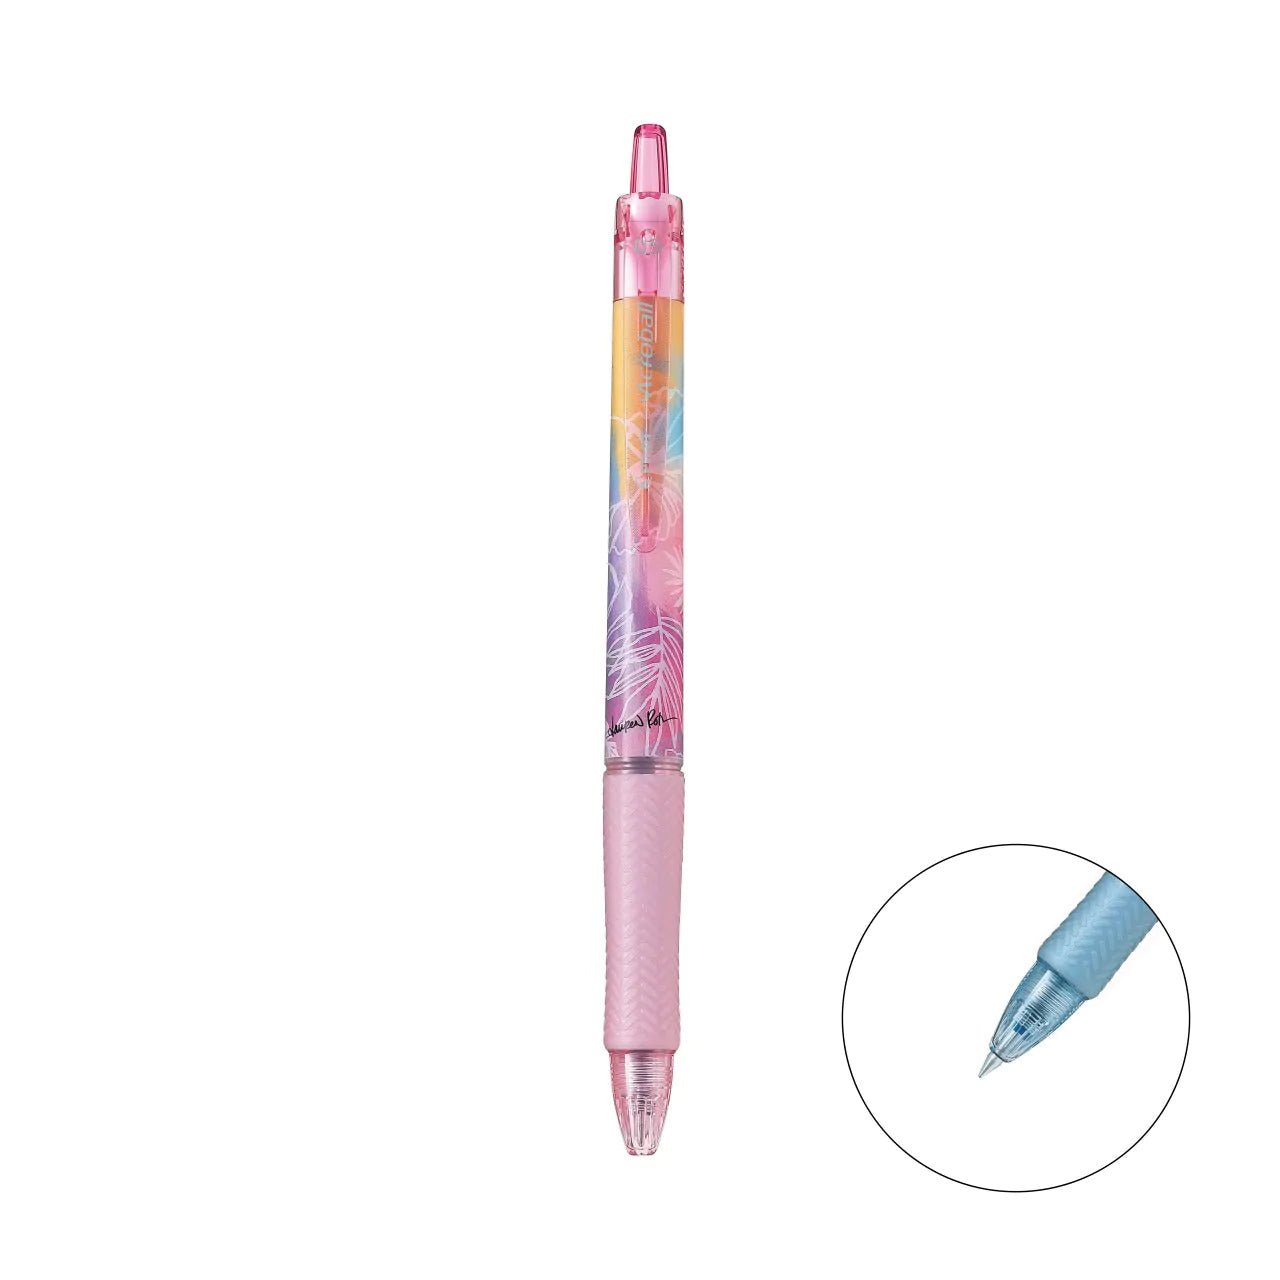 PILOT Acroball Juice up Lauren Roth Flowers Limited Super Juice Pen Oil Pen Eight Color Set - CHL-STORE 